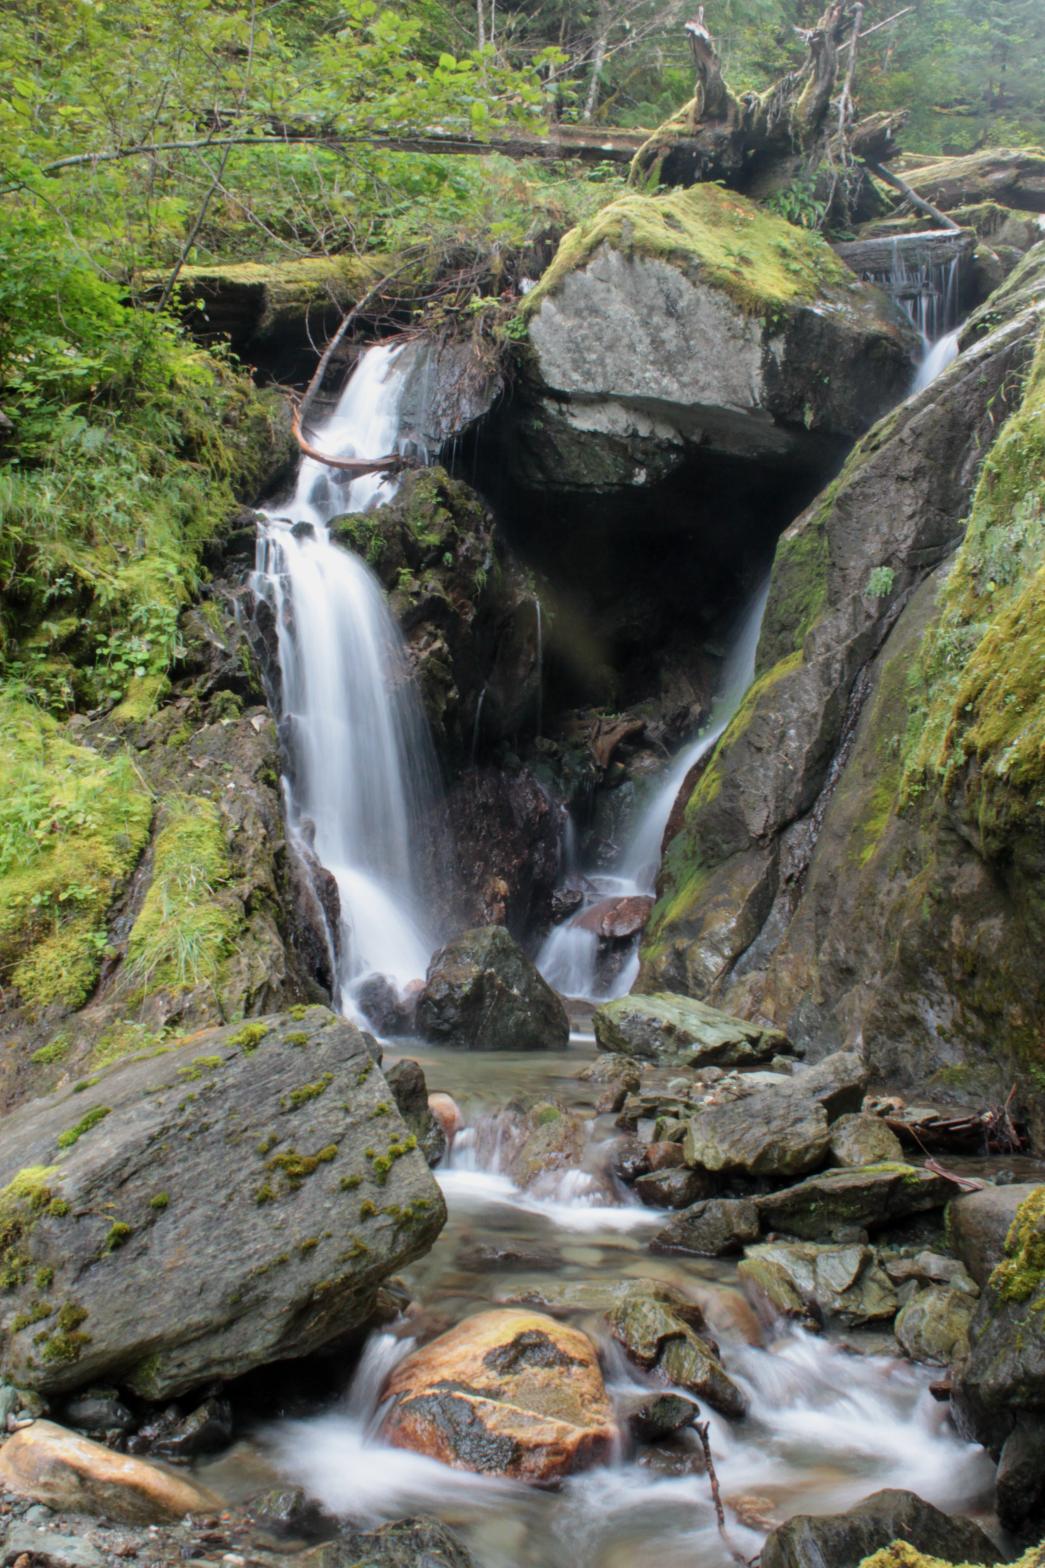 Middle Tier of Conrad Creek Falls